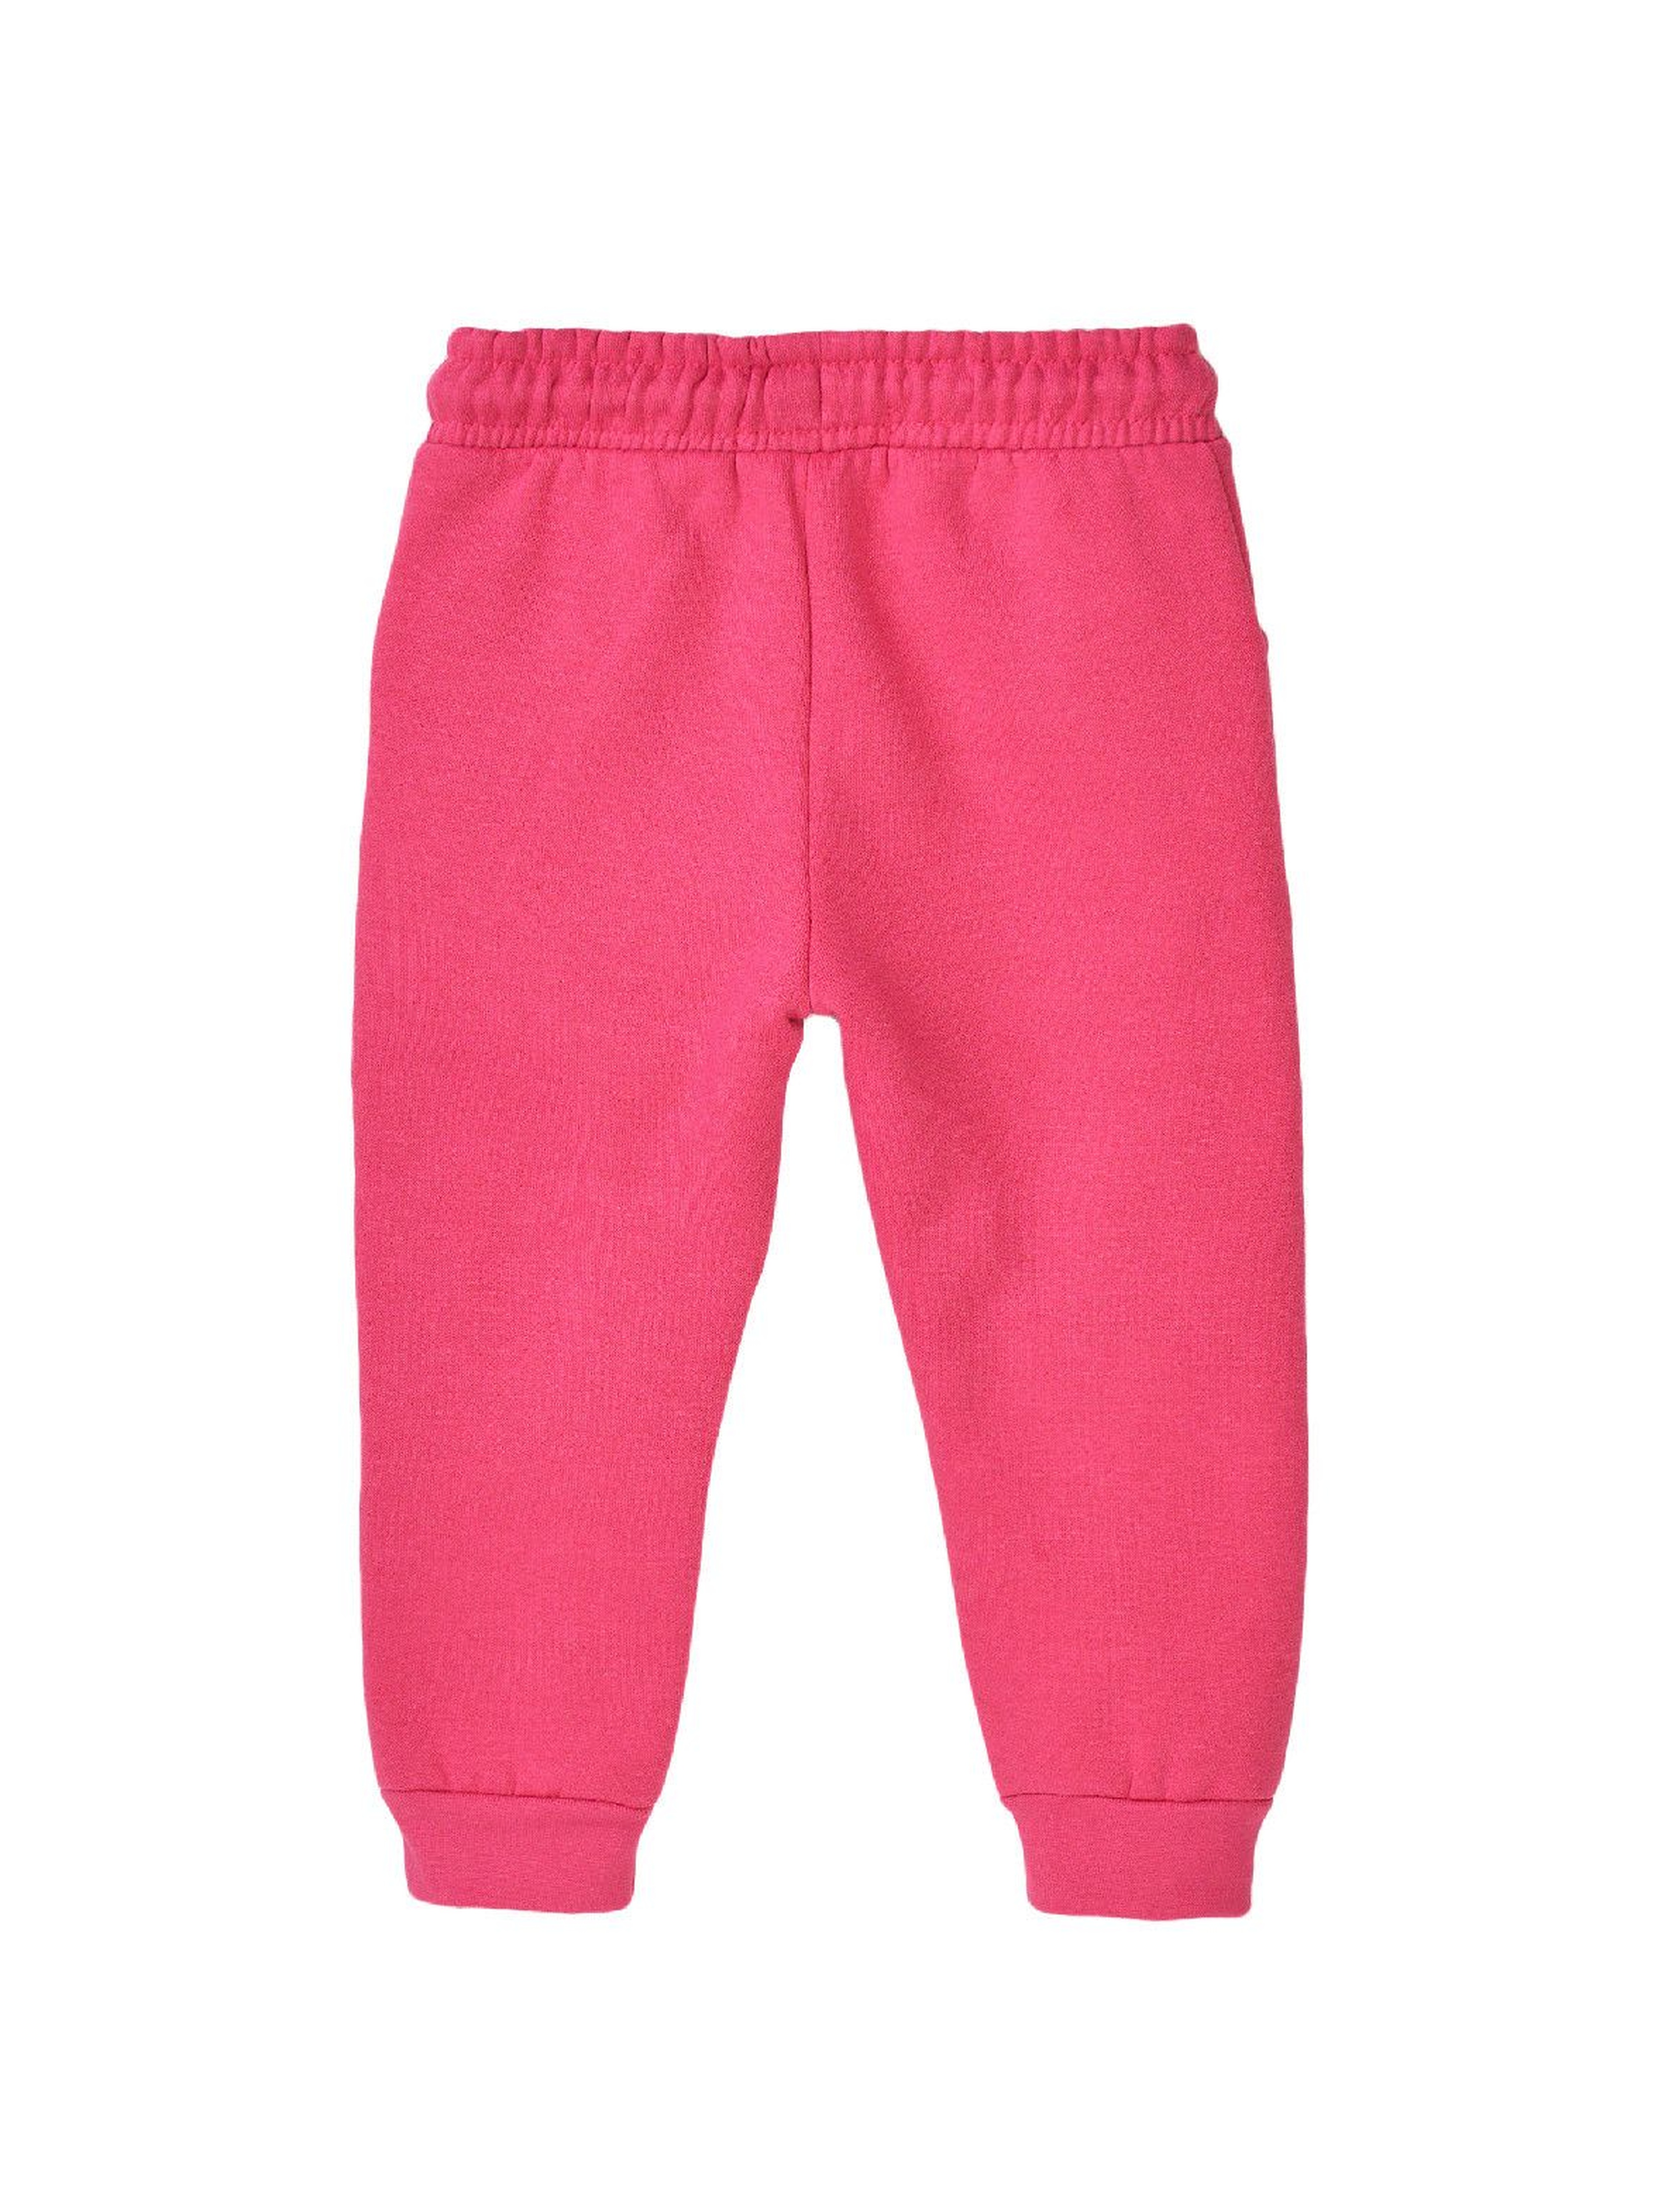 Spodnie dresowe dziewczęce różowe